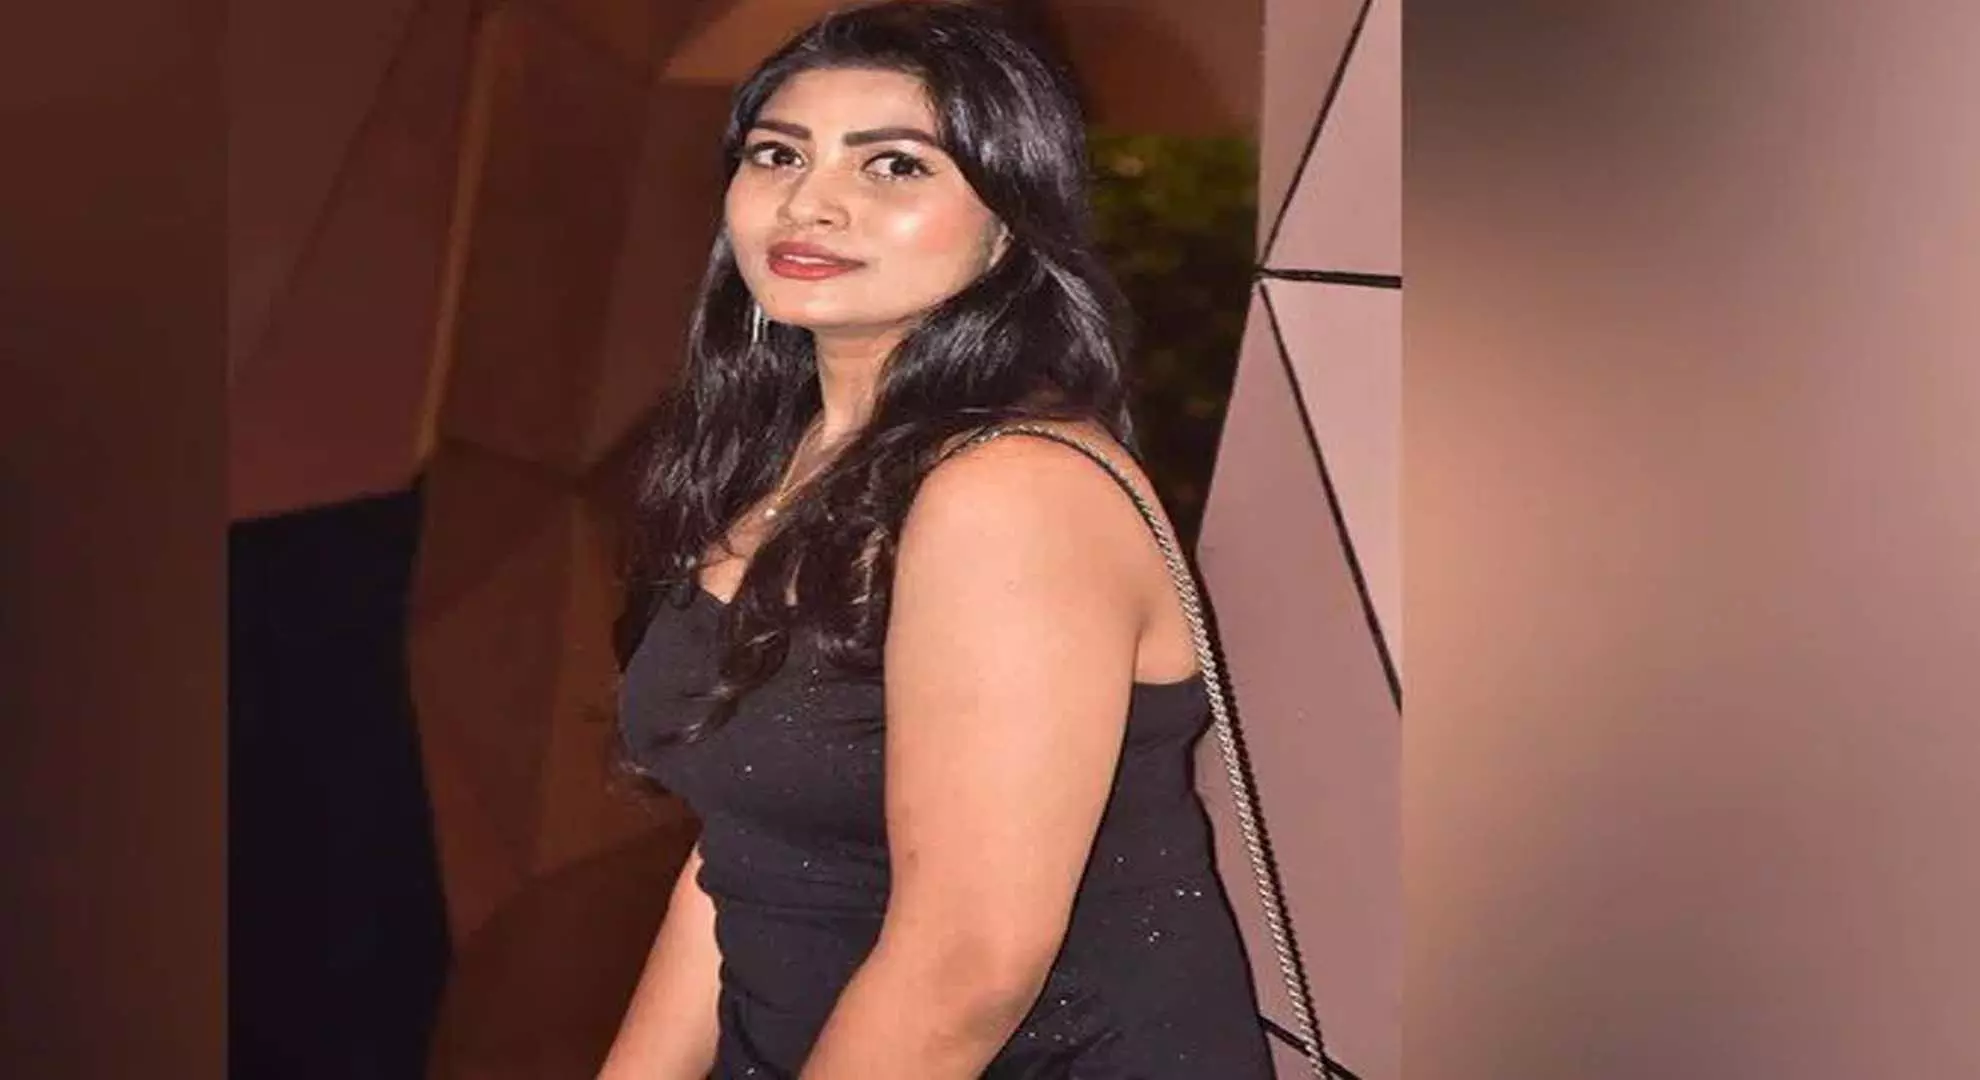 हैदराबाद पुलिस ने ट्रैफिक पुलिसकर्मी के साथ दुर्व्यवहार करने वाली टॉलीवुड अभिनेत्री की पहचान की